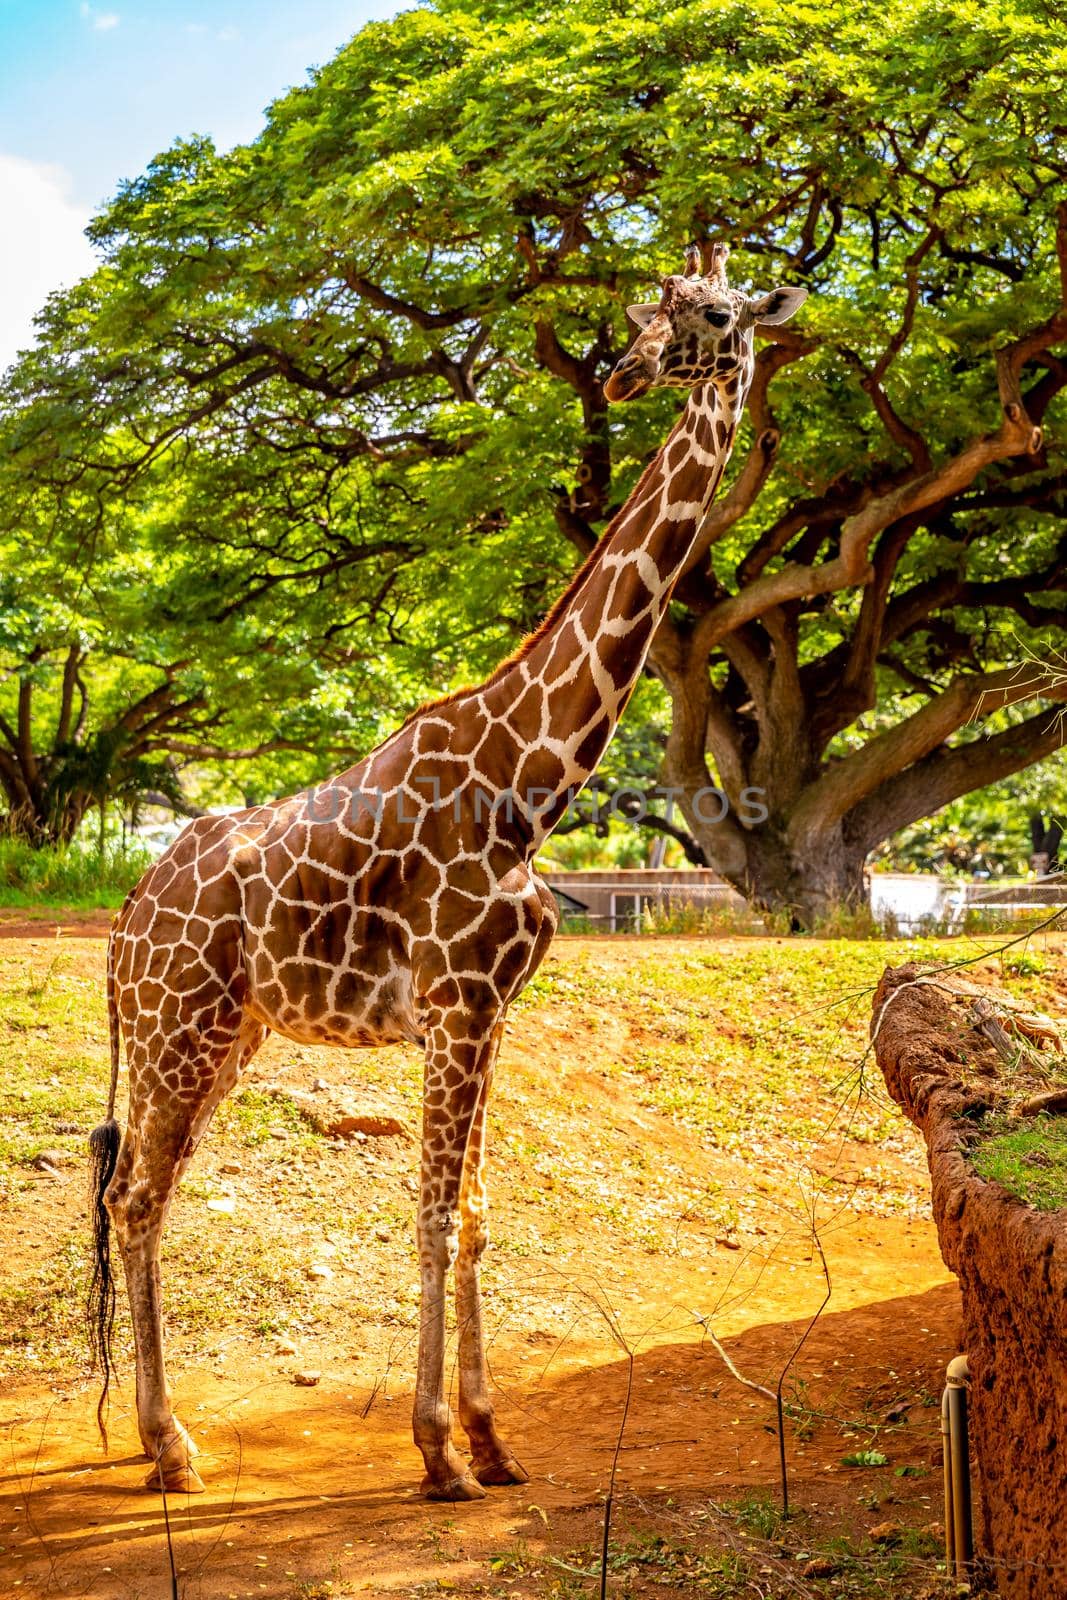 Giraffe Standing under the tree by gepeng